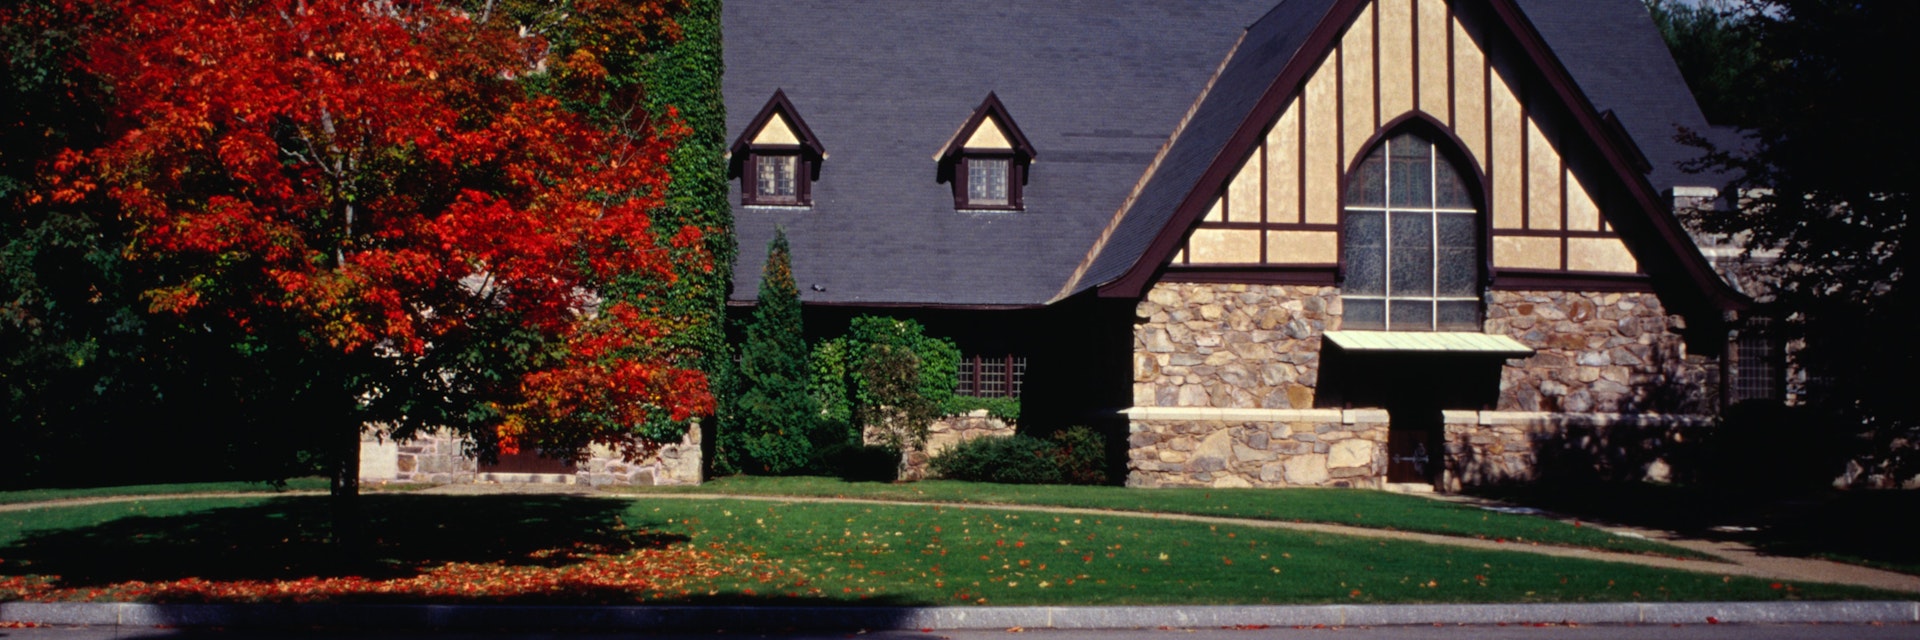 Tudor style architecture amongst autumn colours.